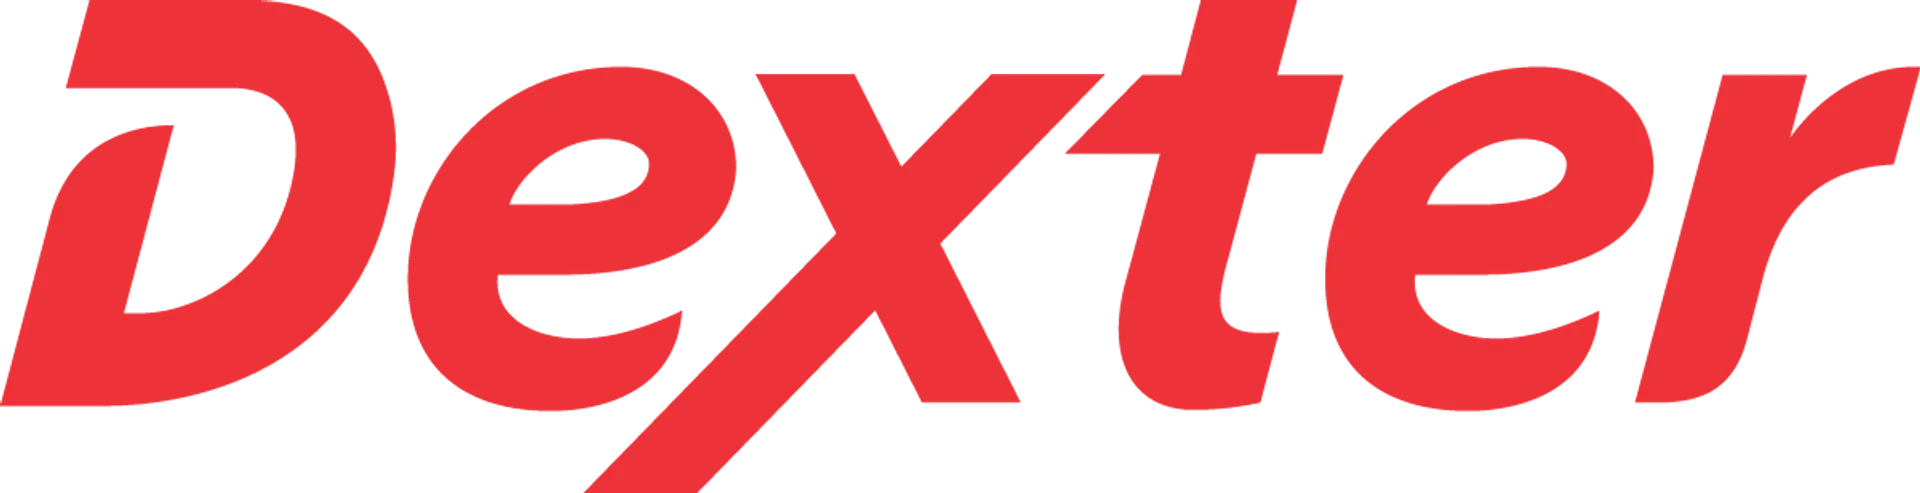 DEXTER logo